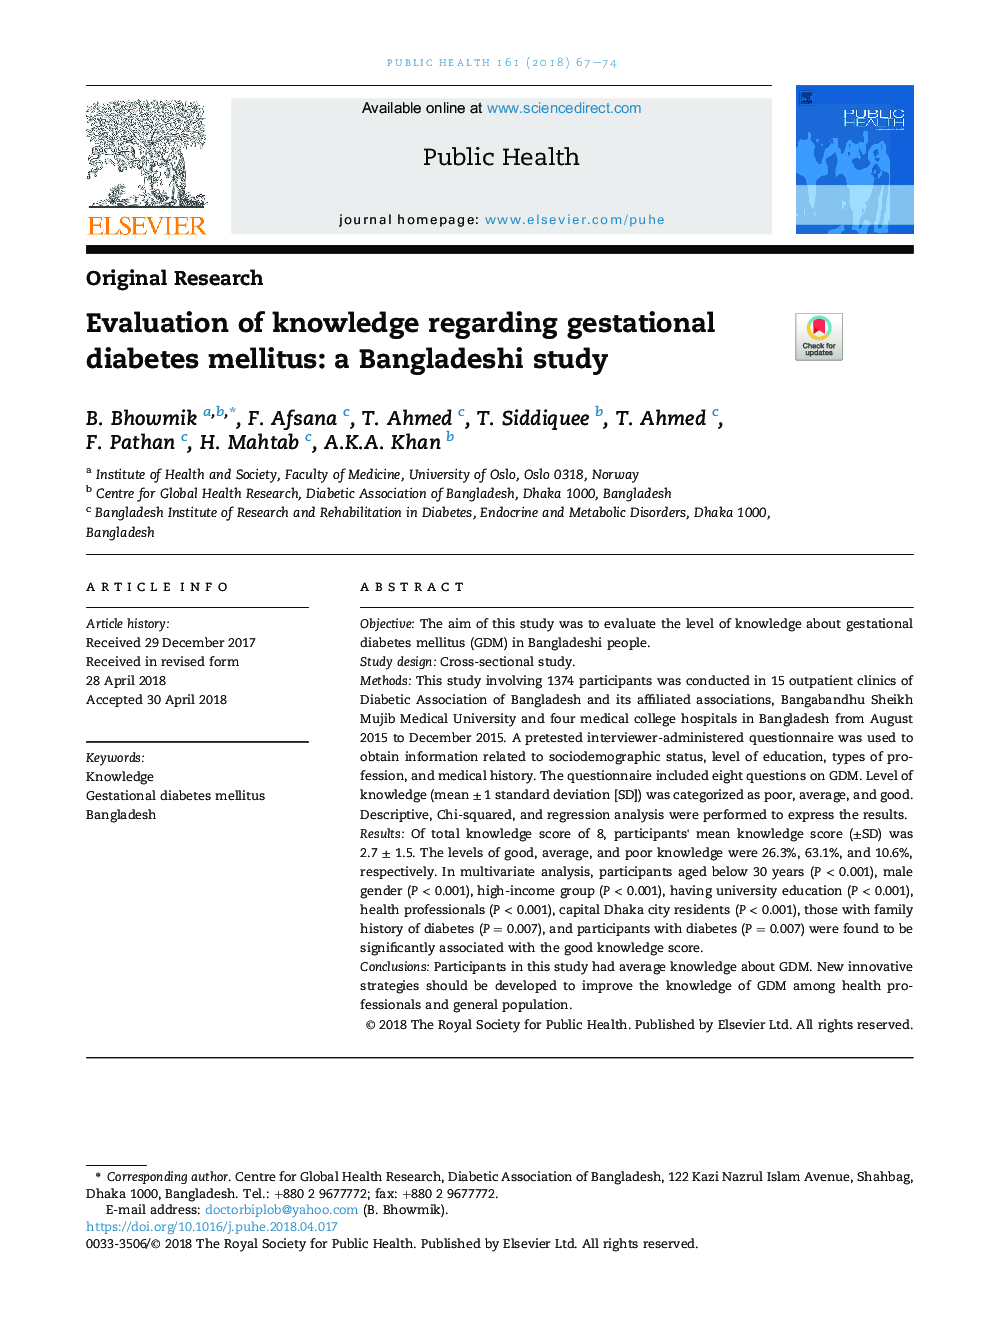 ارزیابی دانش در مورد دیابت بارداری: یک مطالعه بنگلادشی 